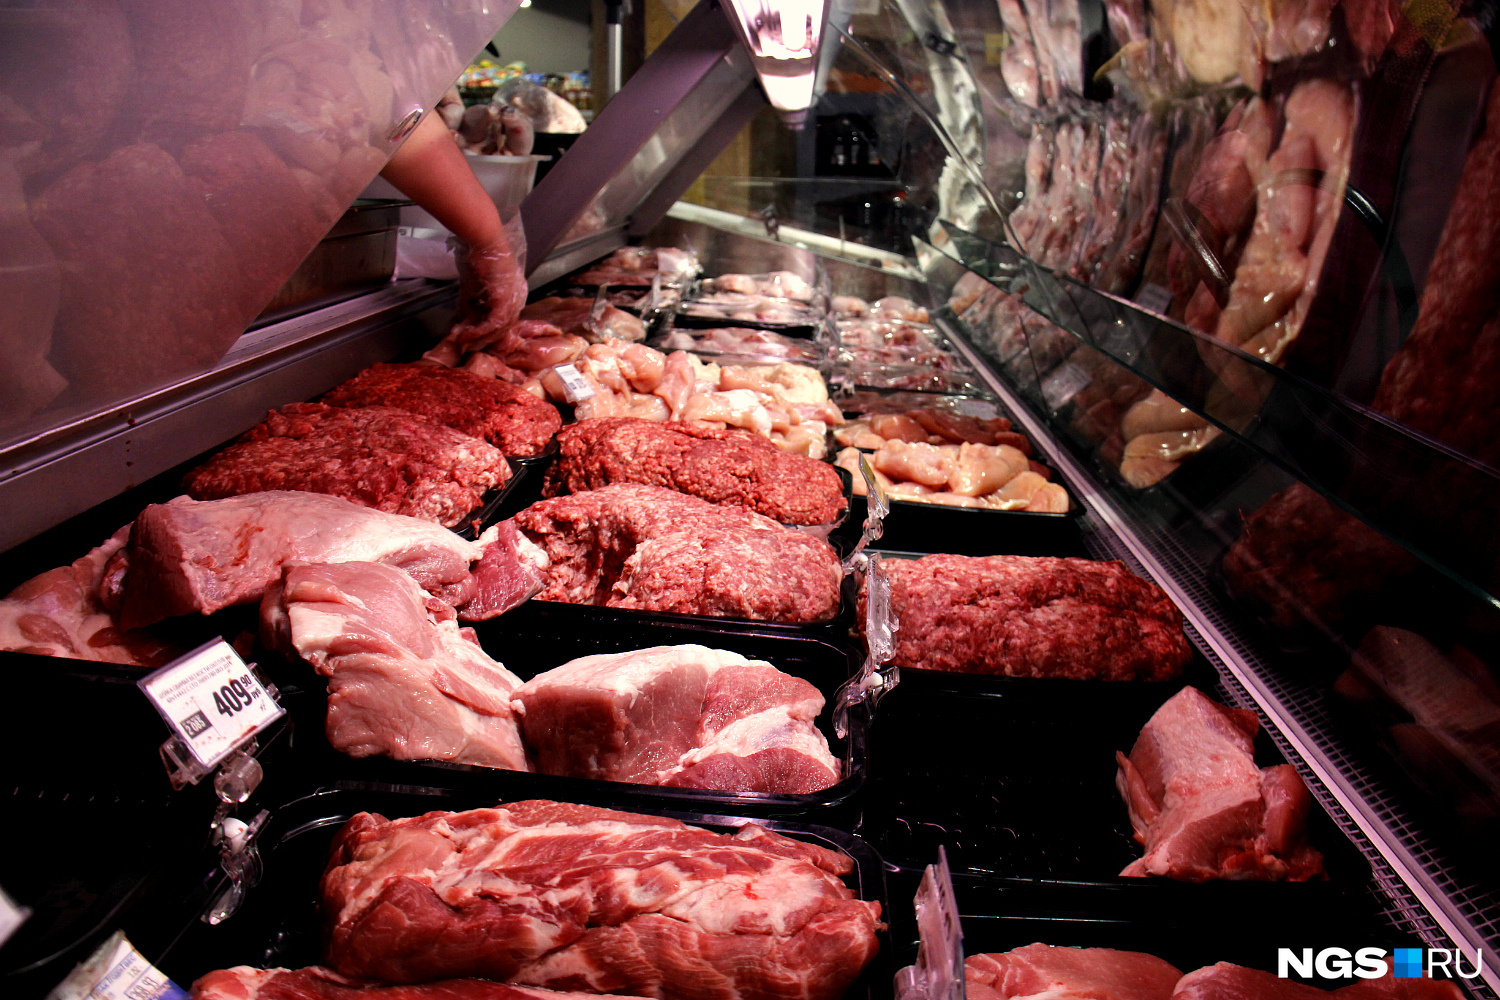 Ажиотаж среди покупателей вызвали скидки на мясо и курицу